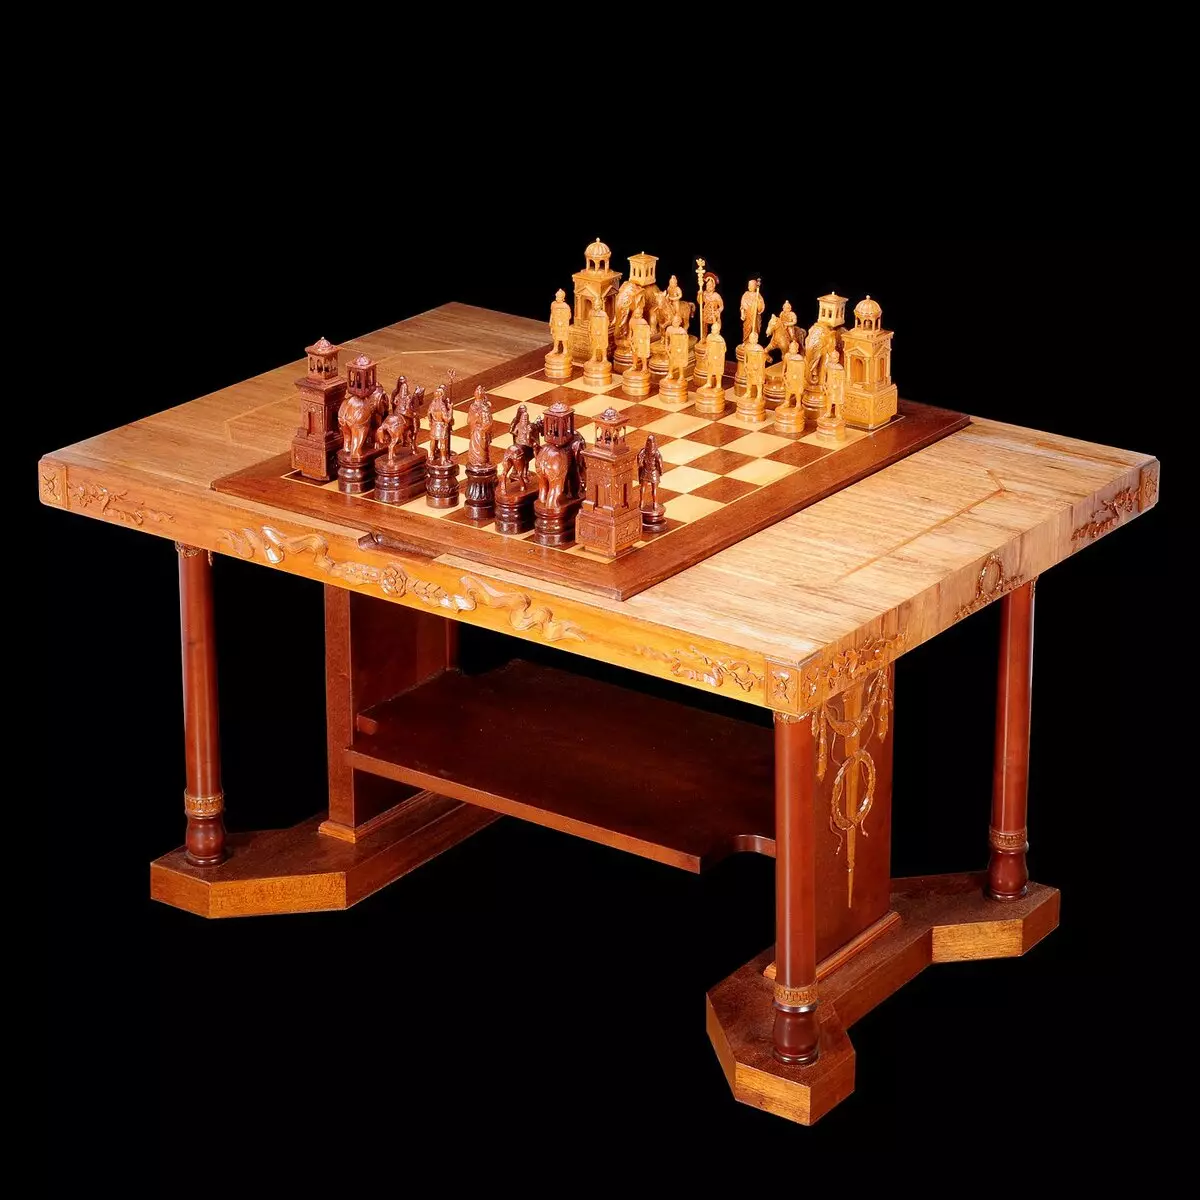 Penggunaan kreatif papan catur di interior